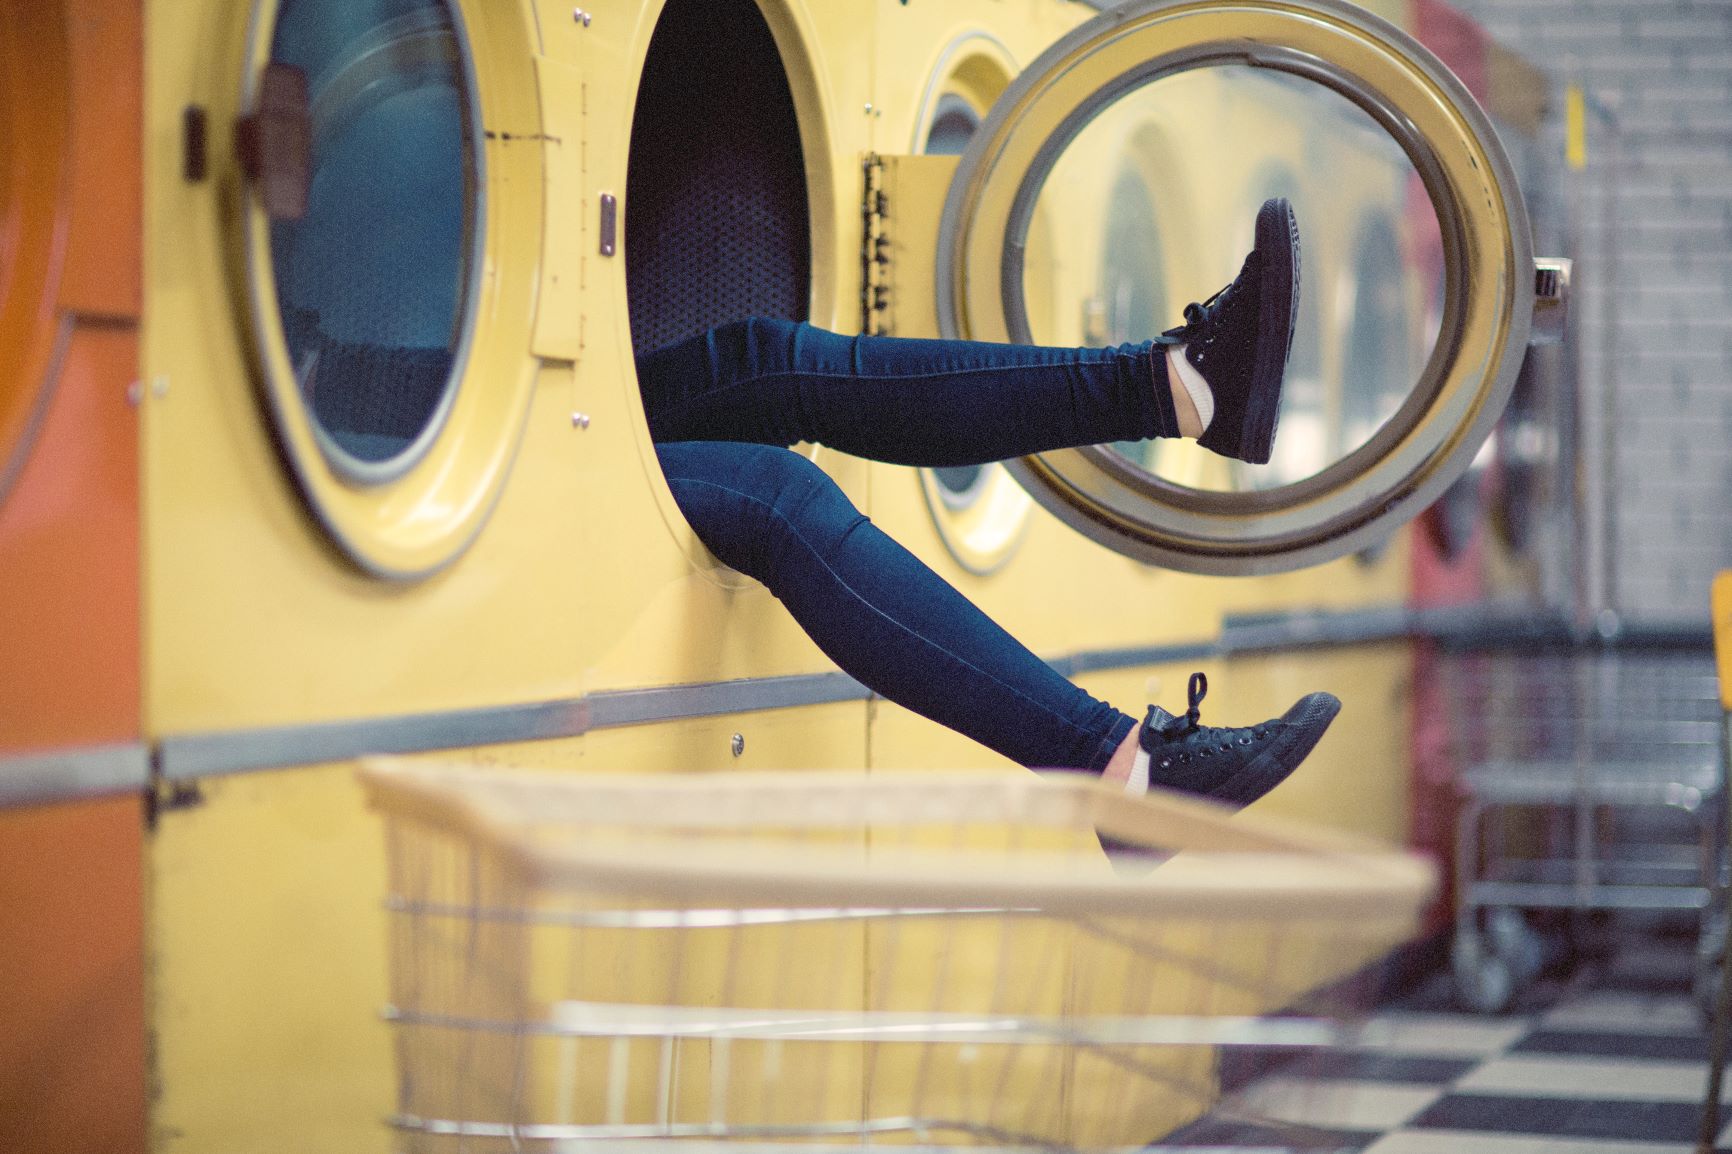 Τι πρέπει να προσέξεις όταν πλένεις τα ρούχα σου ώστε να βεβαιωθείς πως δεν μεταφέρουν μικρόβια